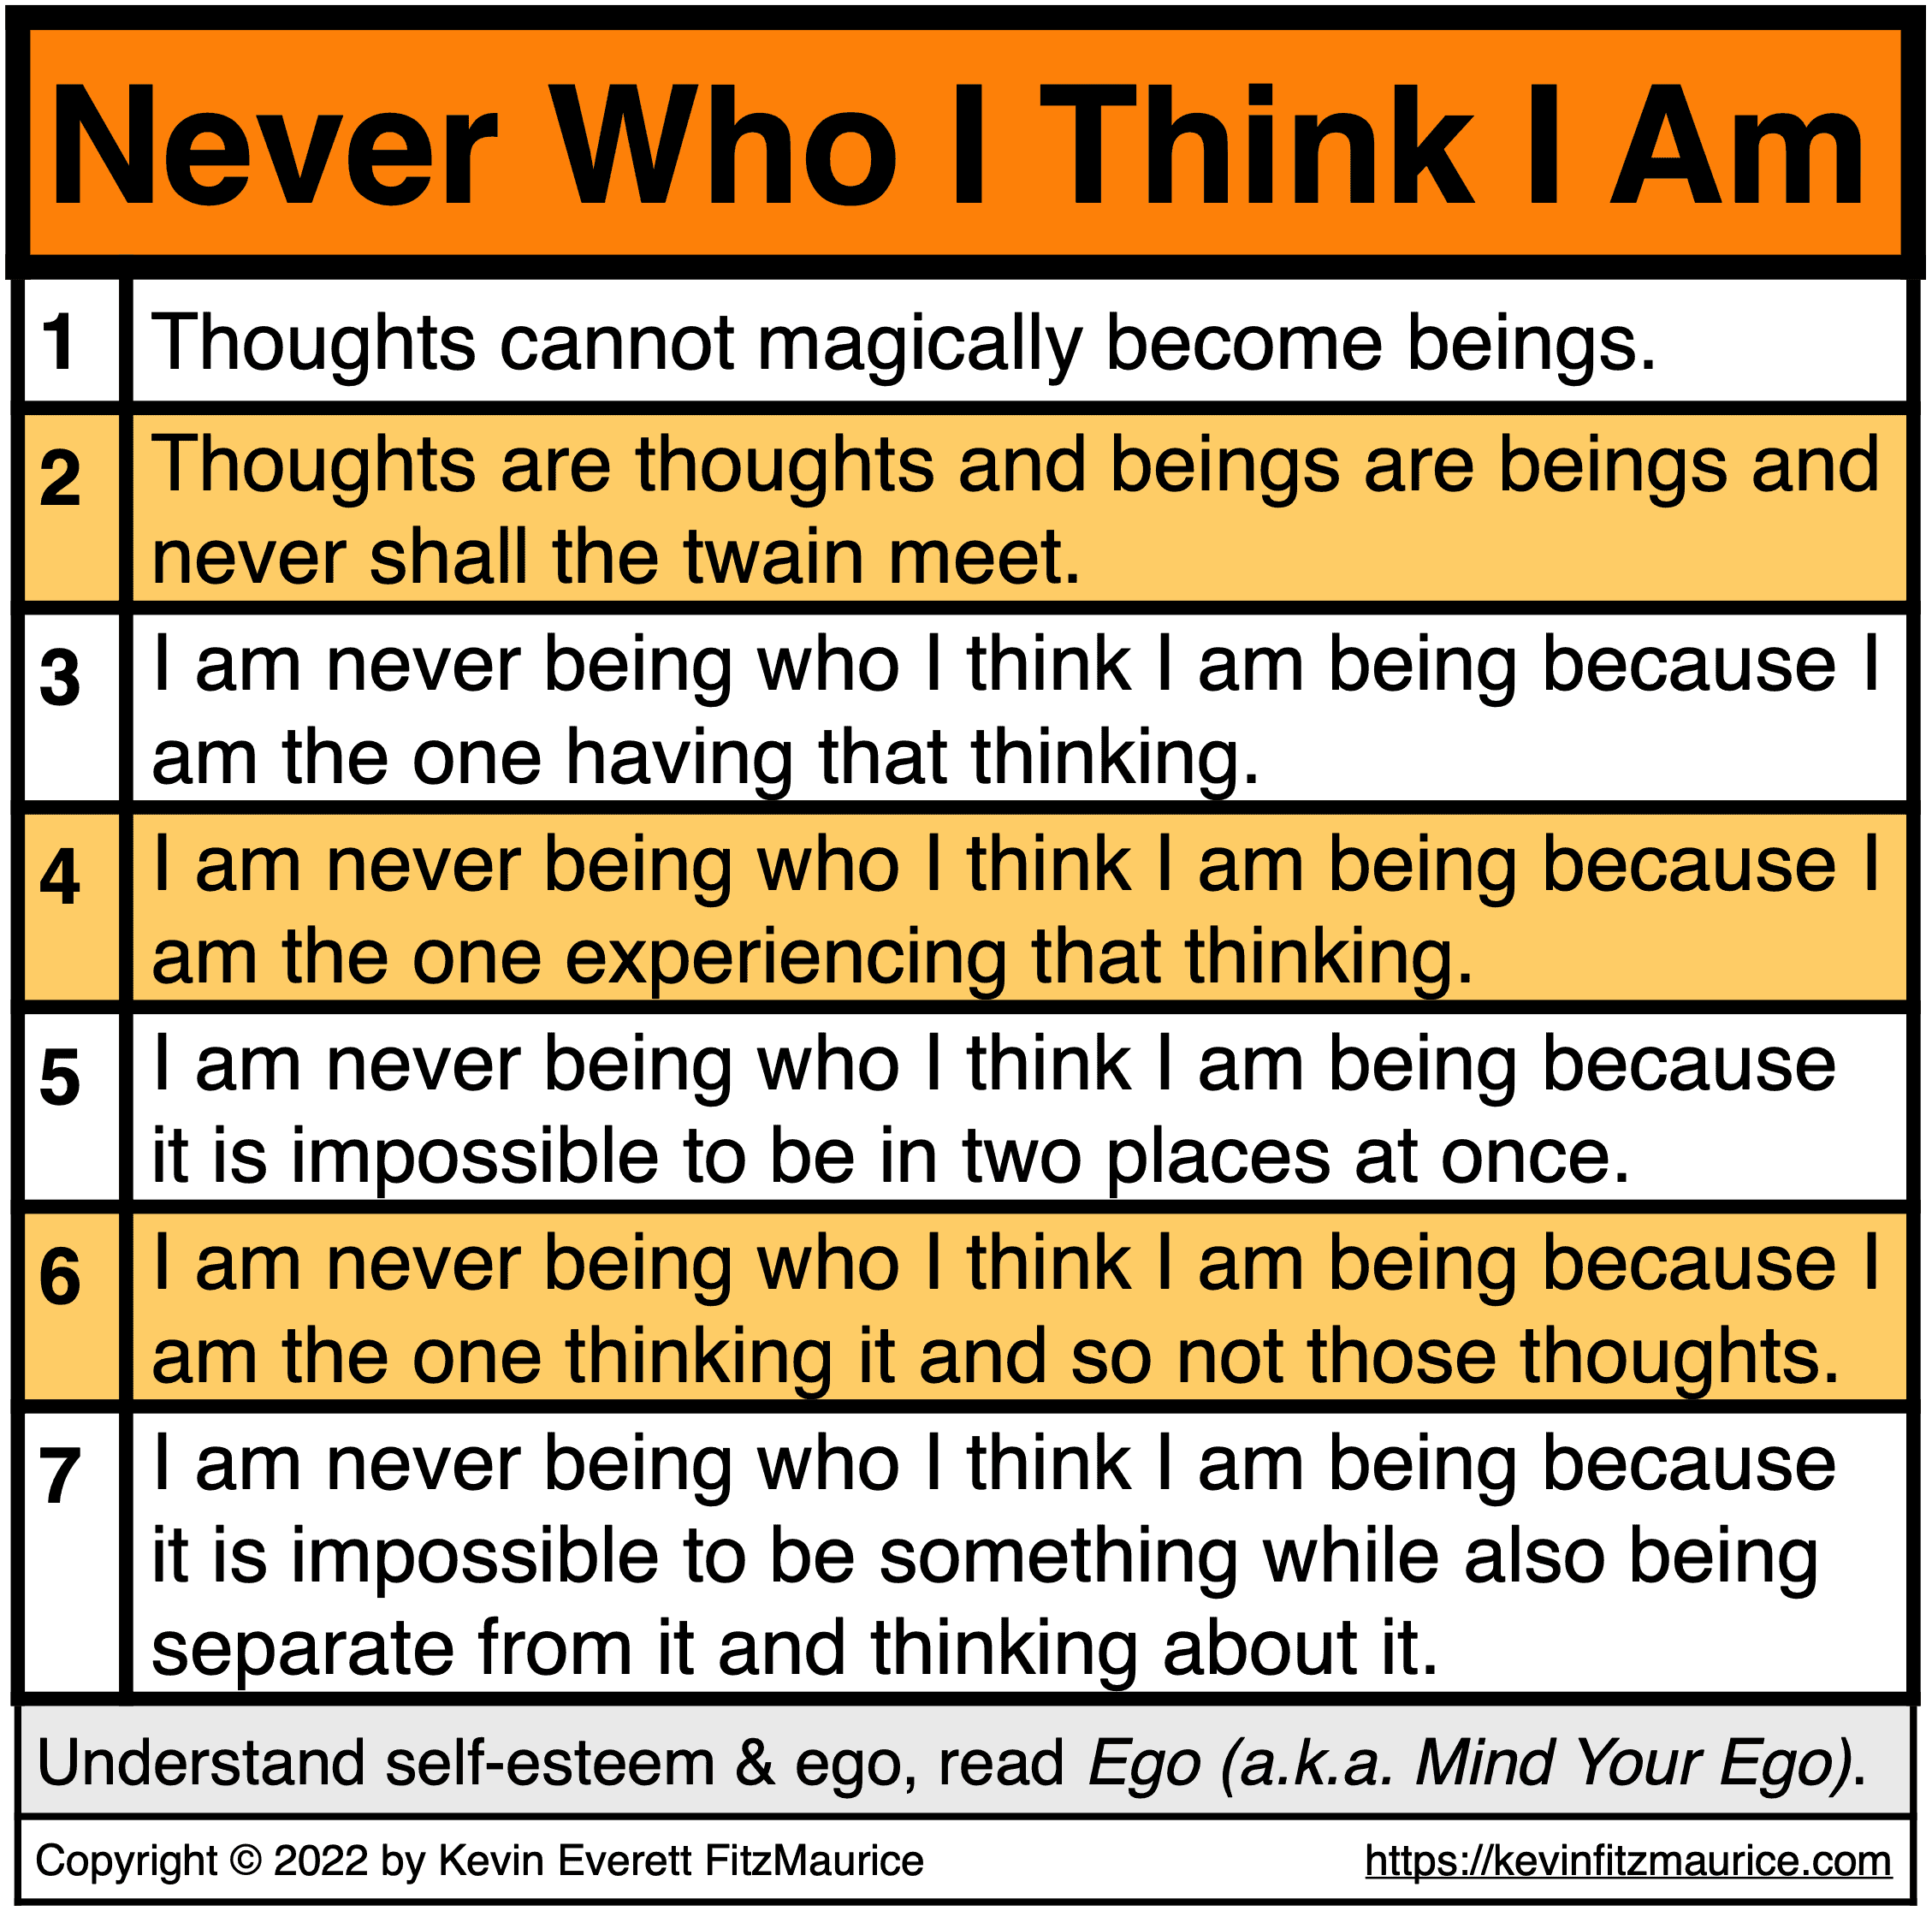 I am never who I think I am.